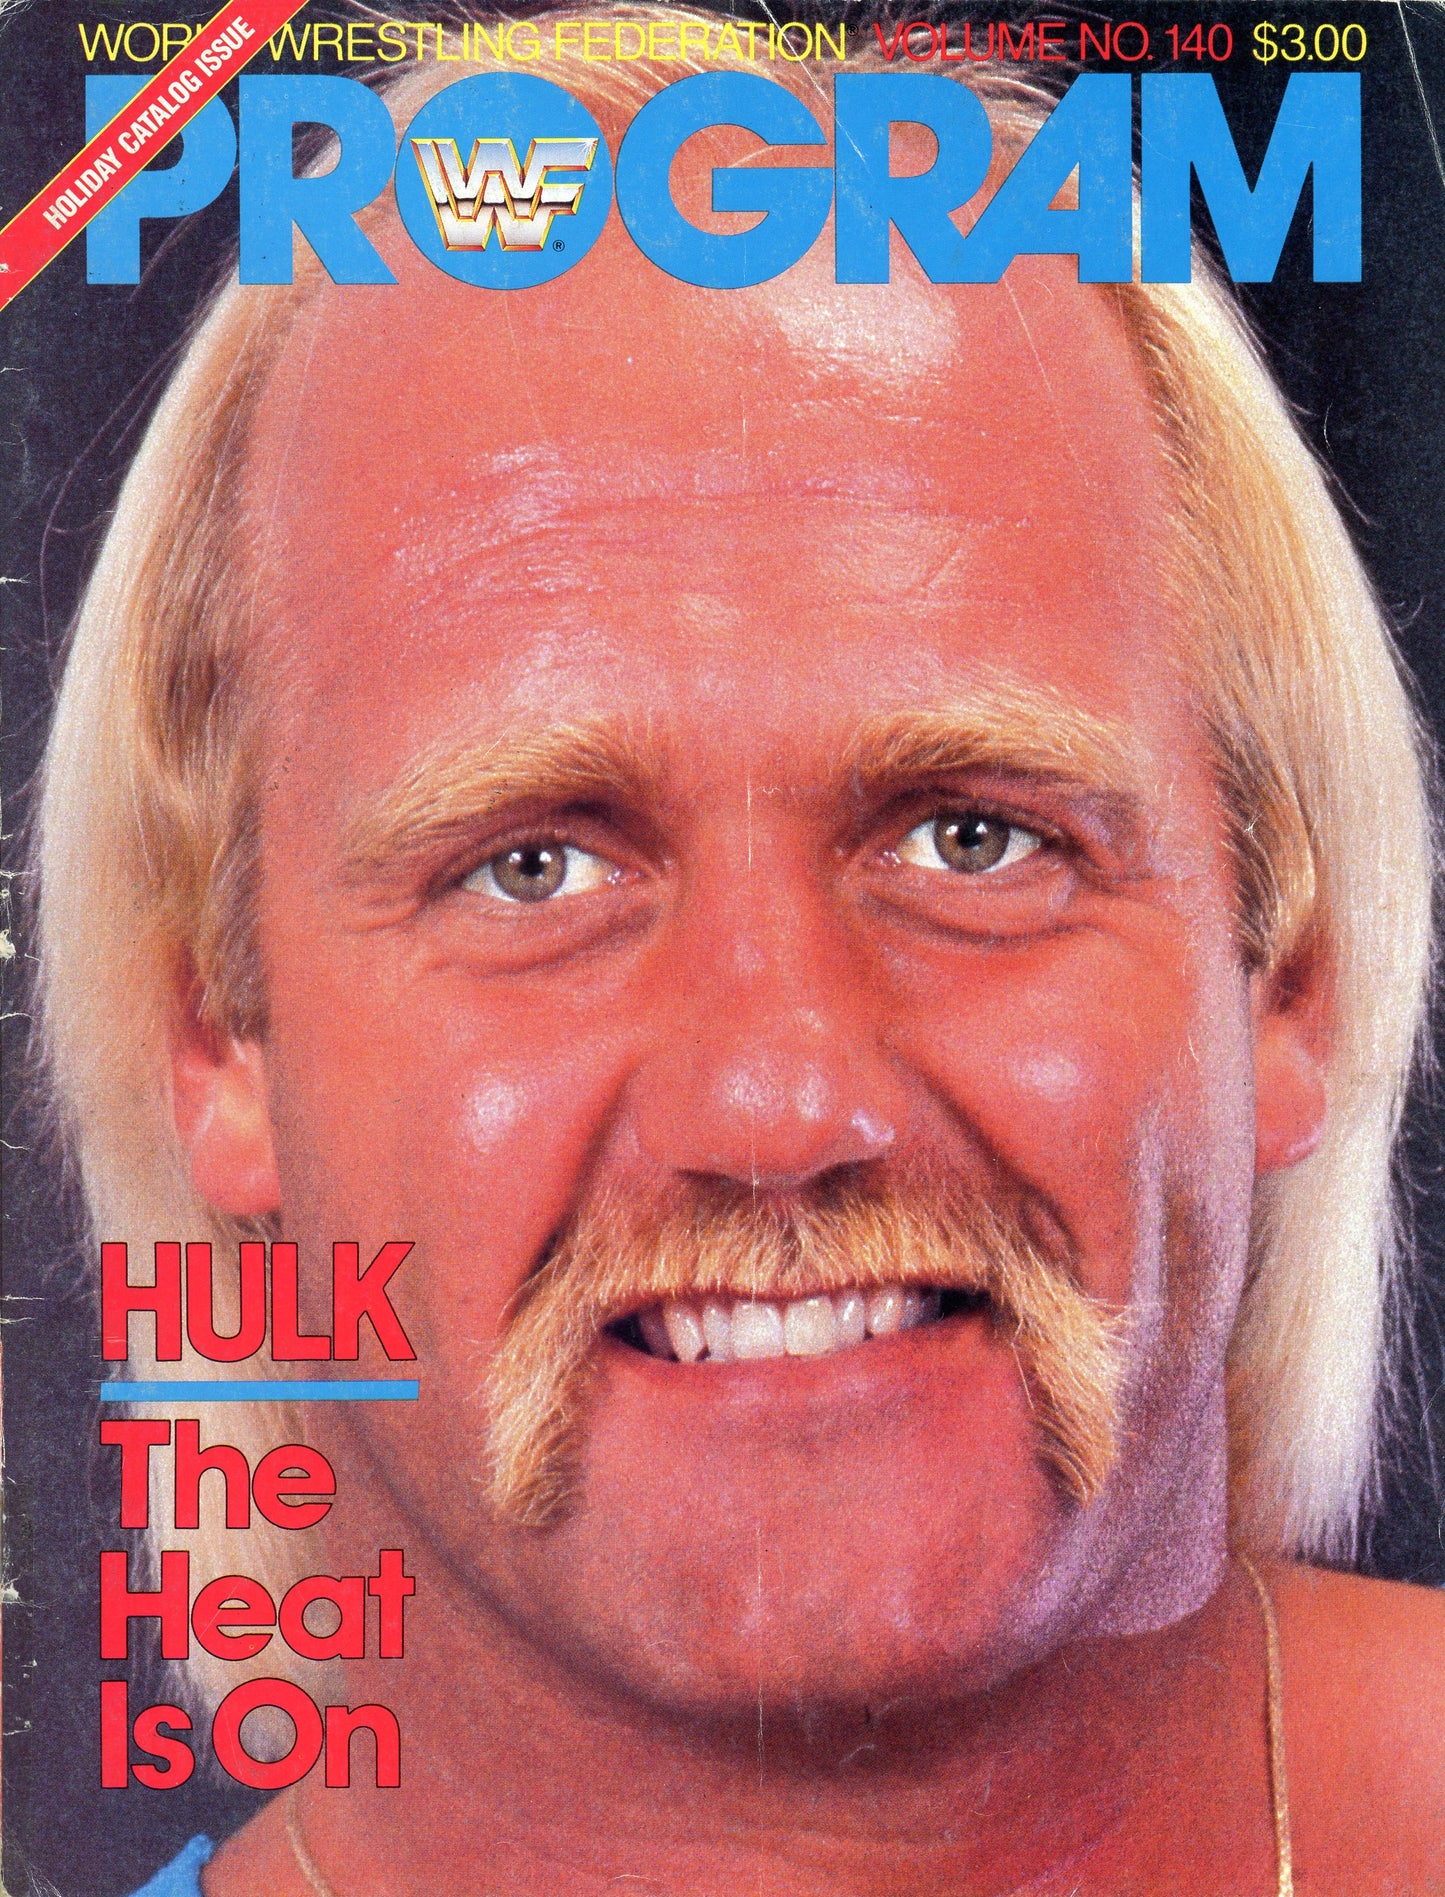 1986 WWF WWE Wrestling House Show Program Magazine W/ Lineup Card